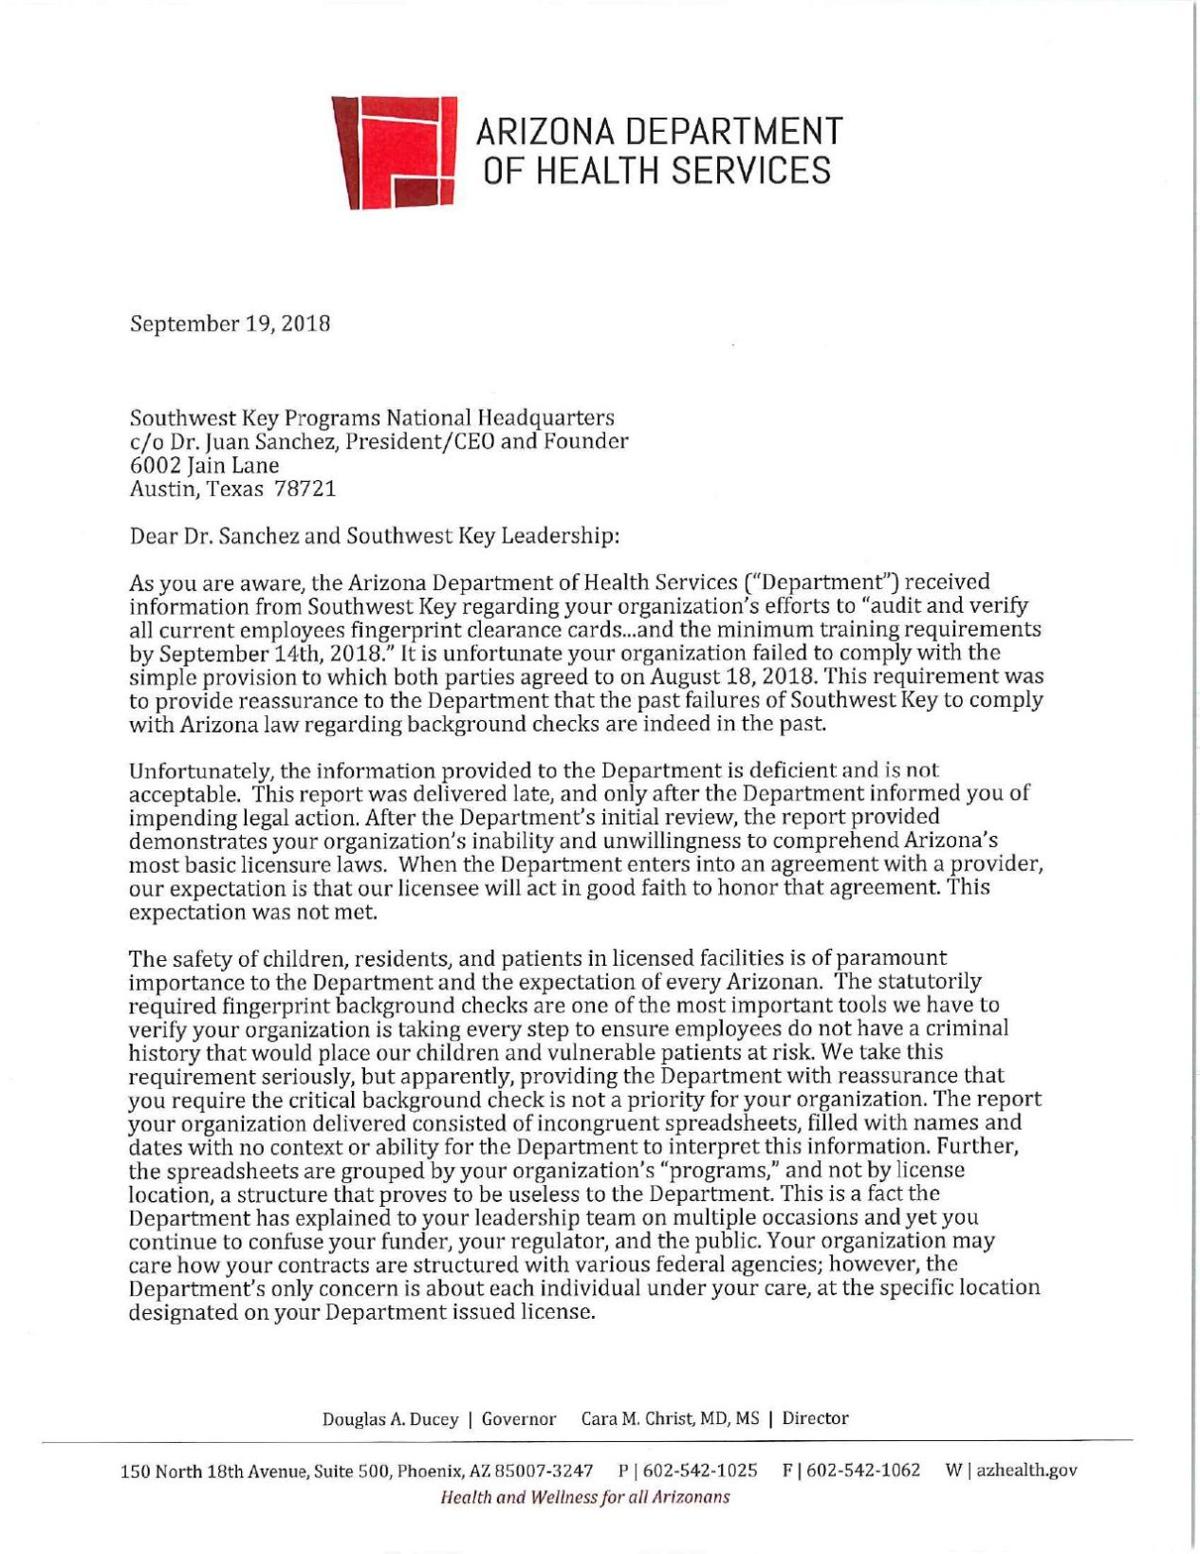 Arizona DHS' letter to Southwest Key